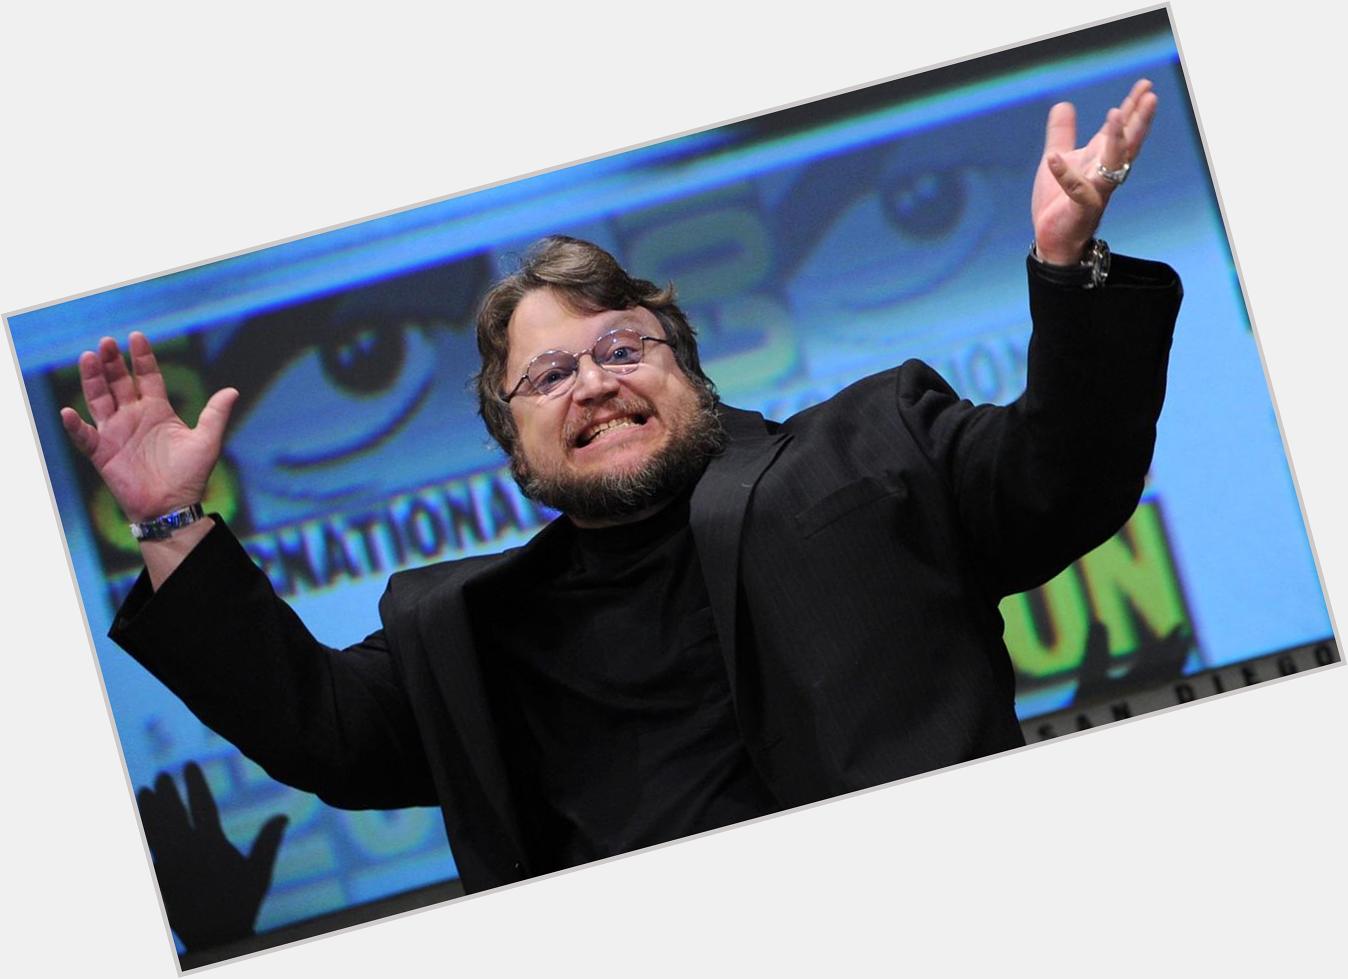  ReinaaRoyale: Happy birthday, Guillermo del Toro! 